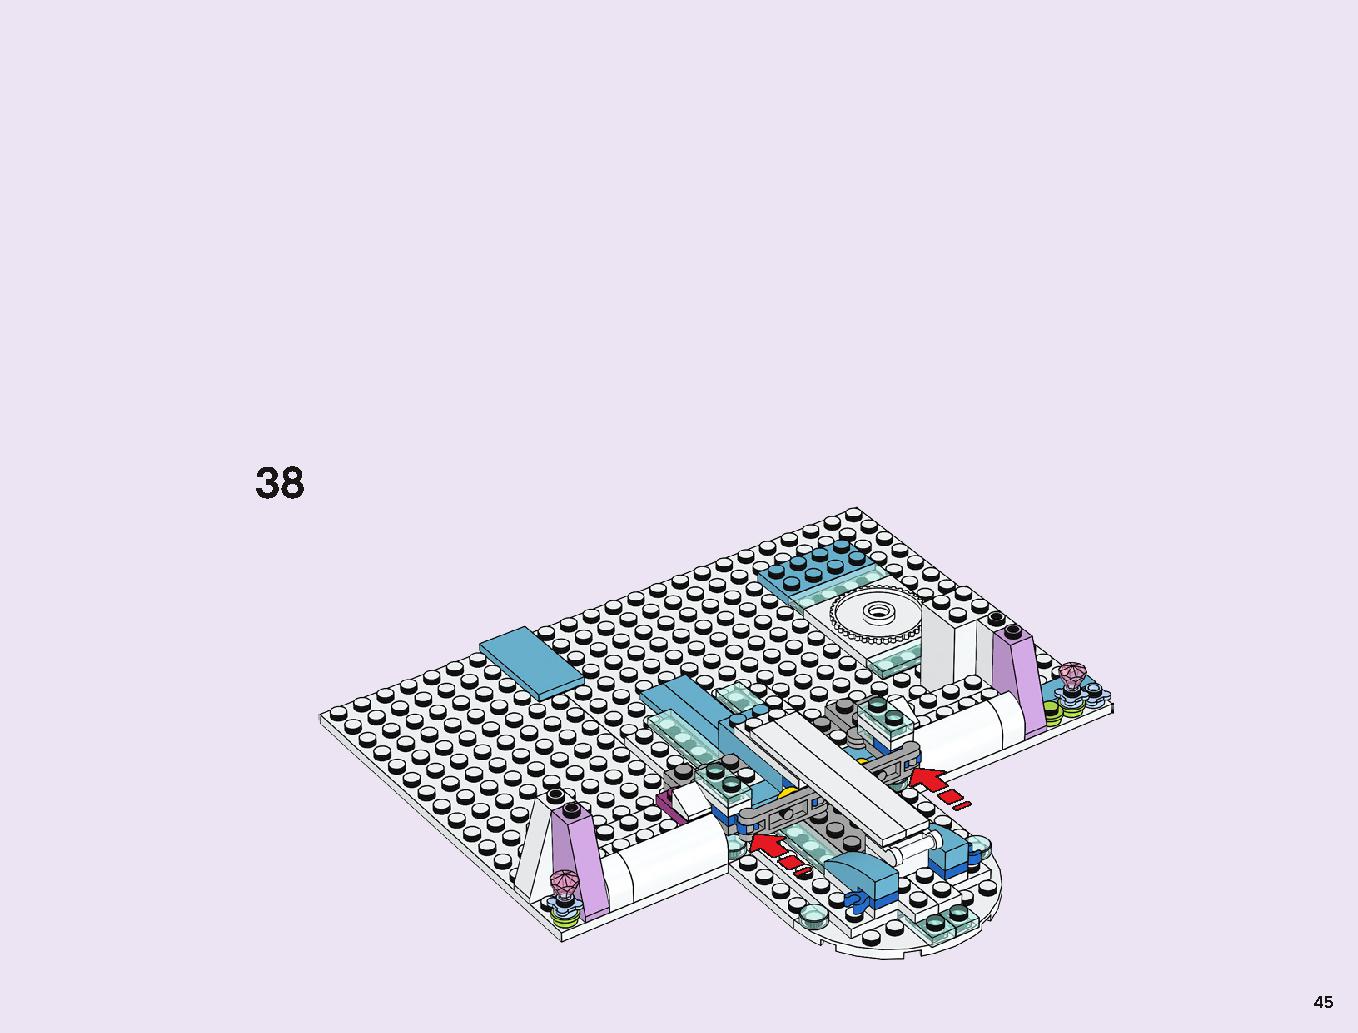 겨울왕국 엘사의 마법 얼음 궁전 43172 레고 세트 제품정보 레고 조립설명서 45 page